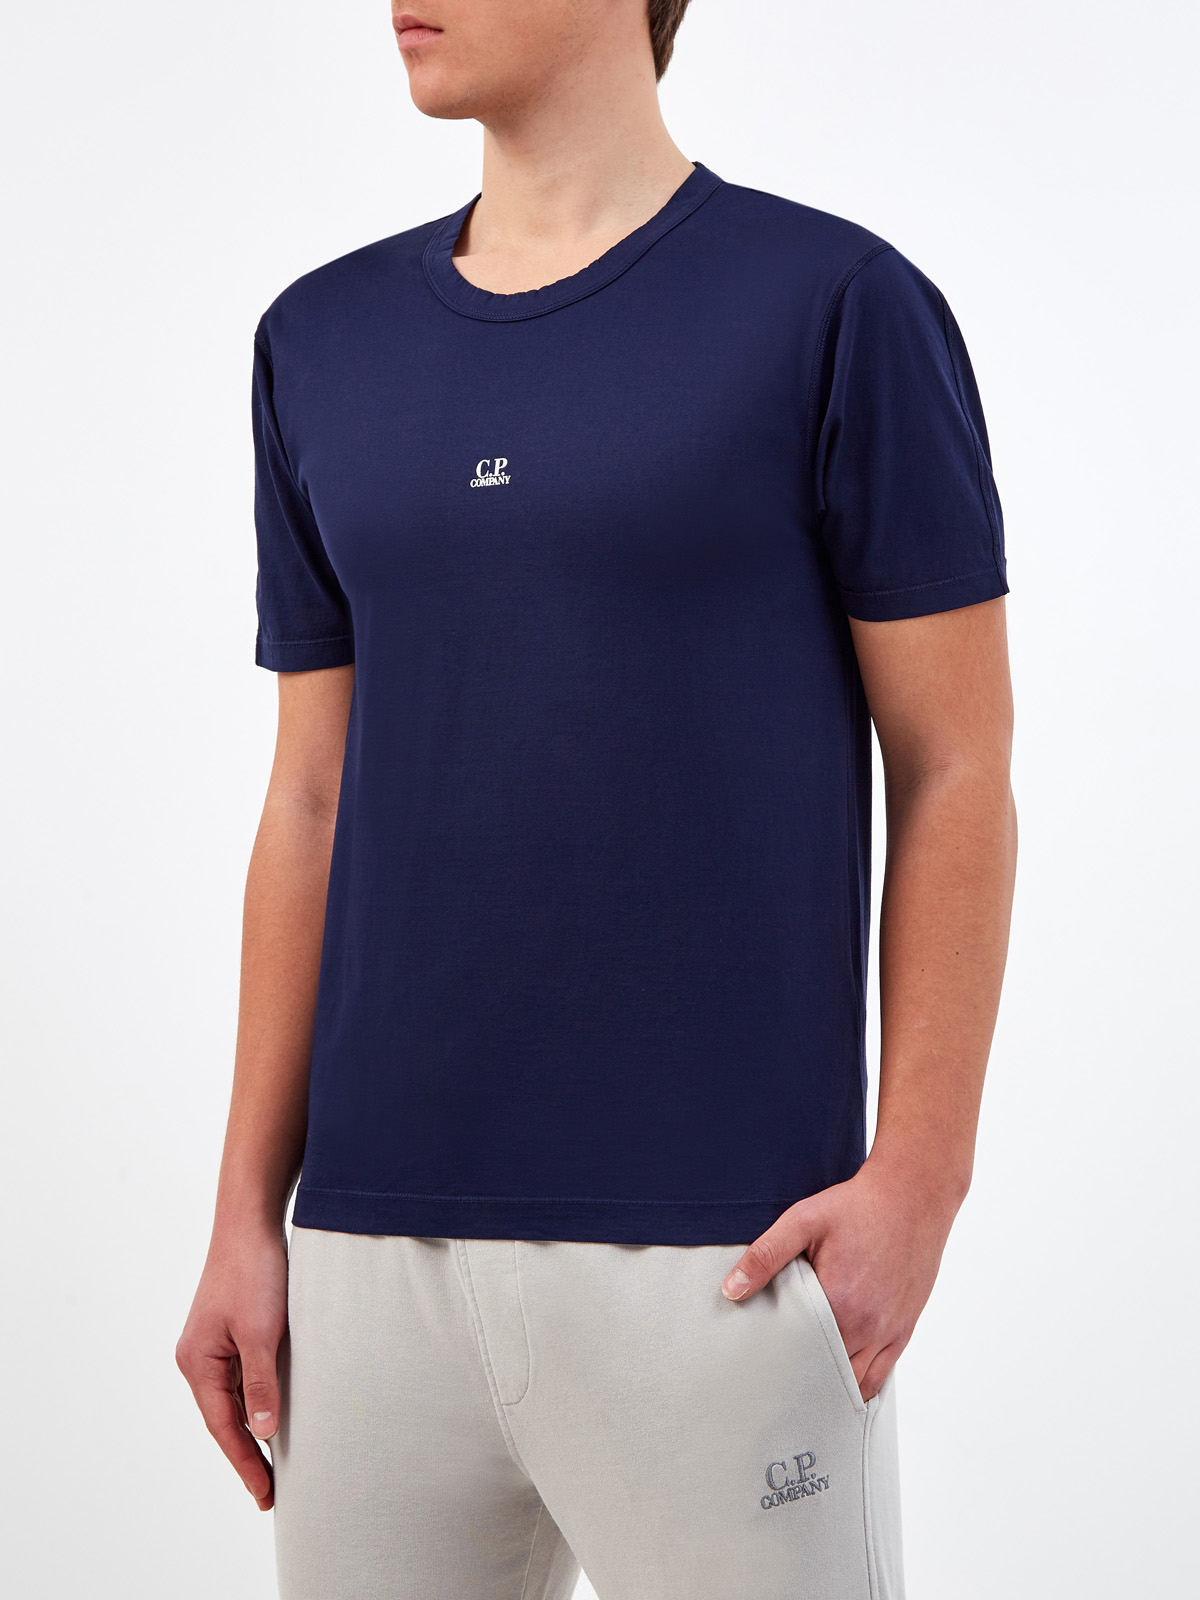 Однотонная футболка из хлопка джерси с логотипом C.P.COMPANY, цвет синий, размер 46;48;50;52;54;56 - фото 3